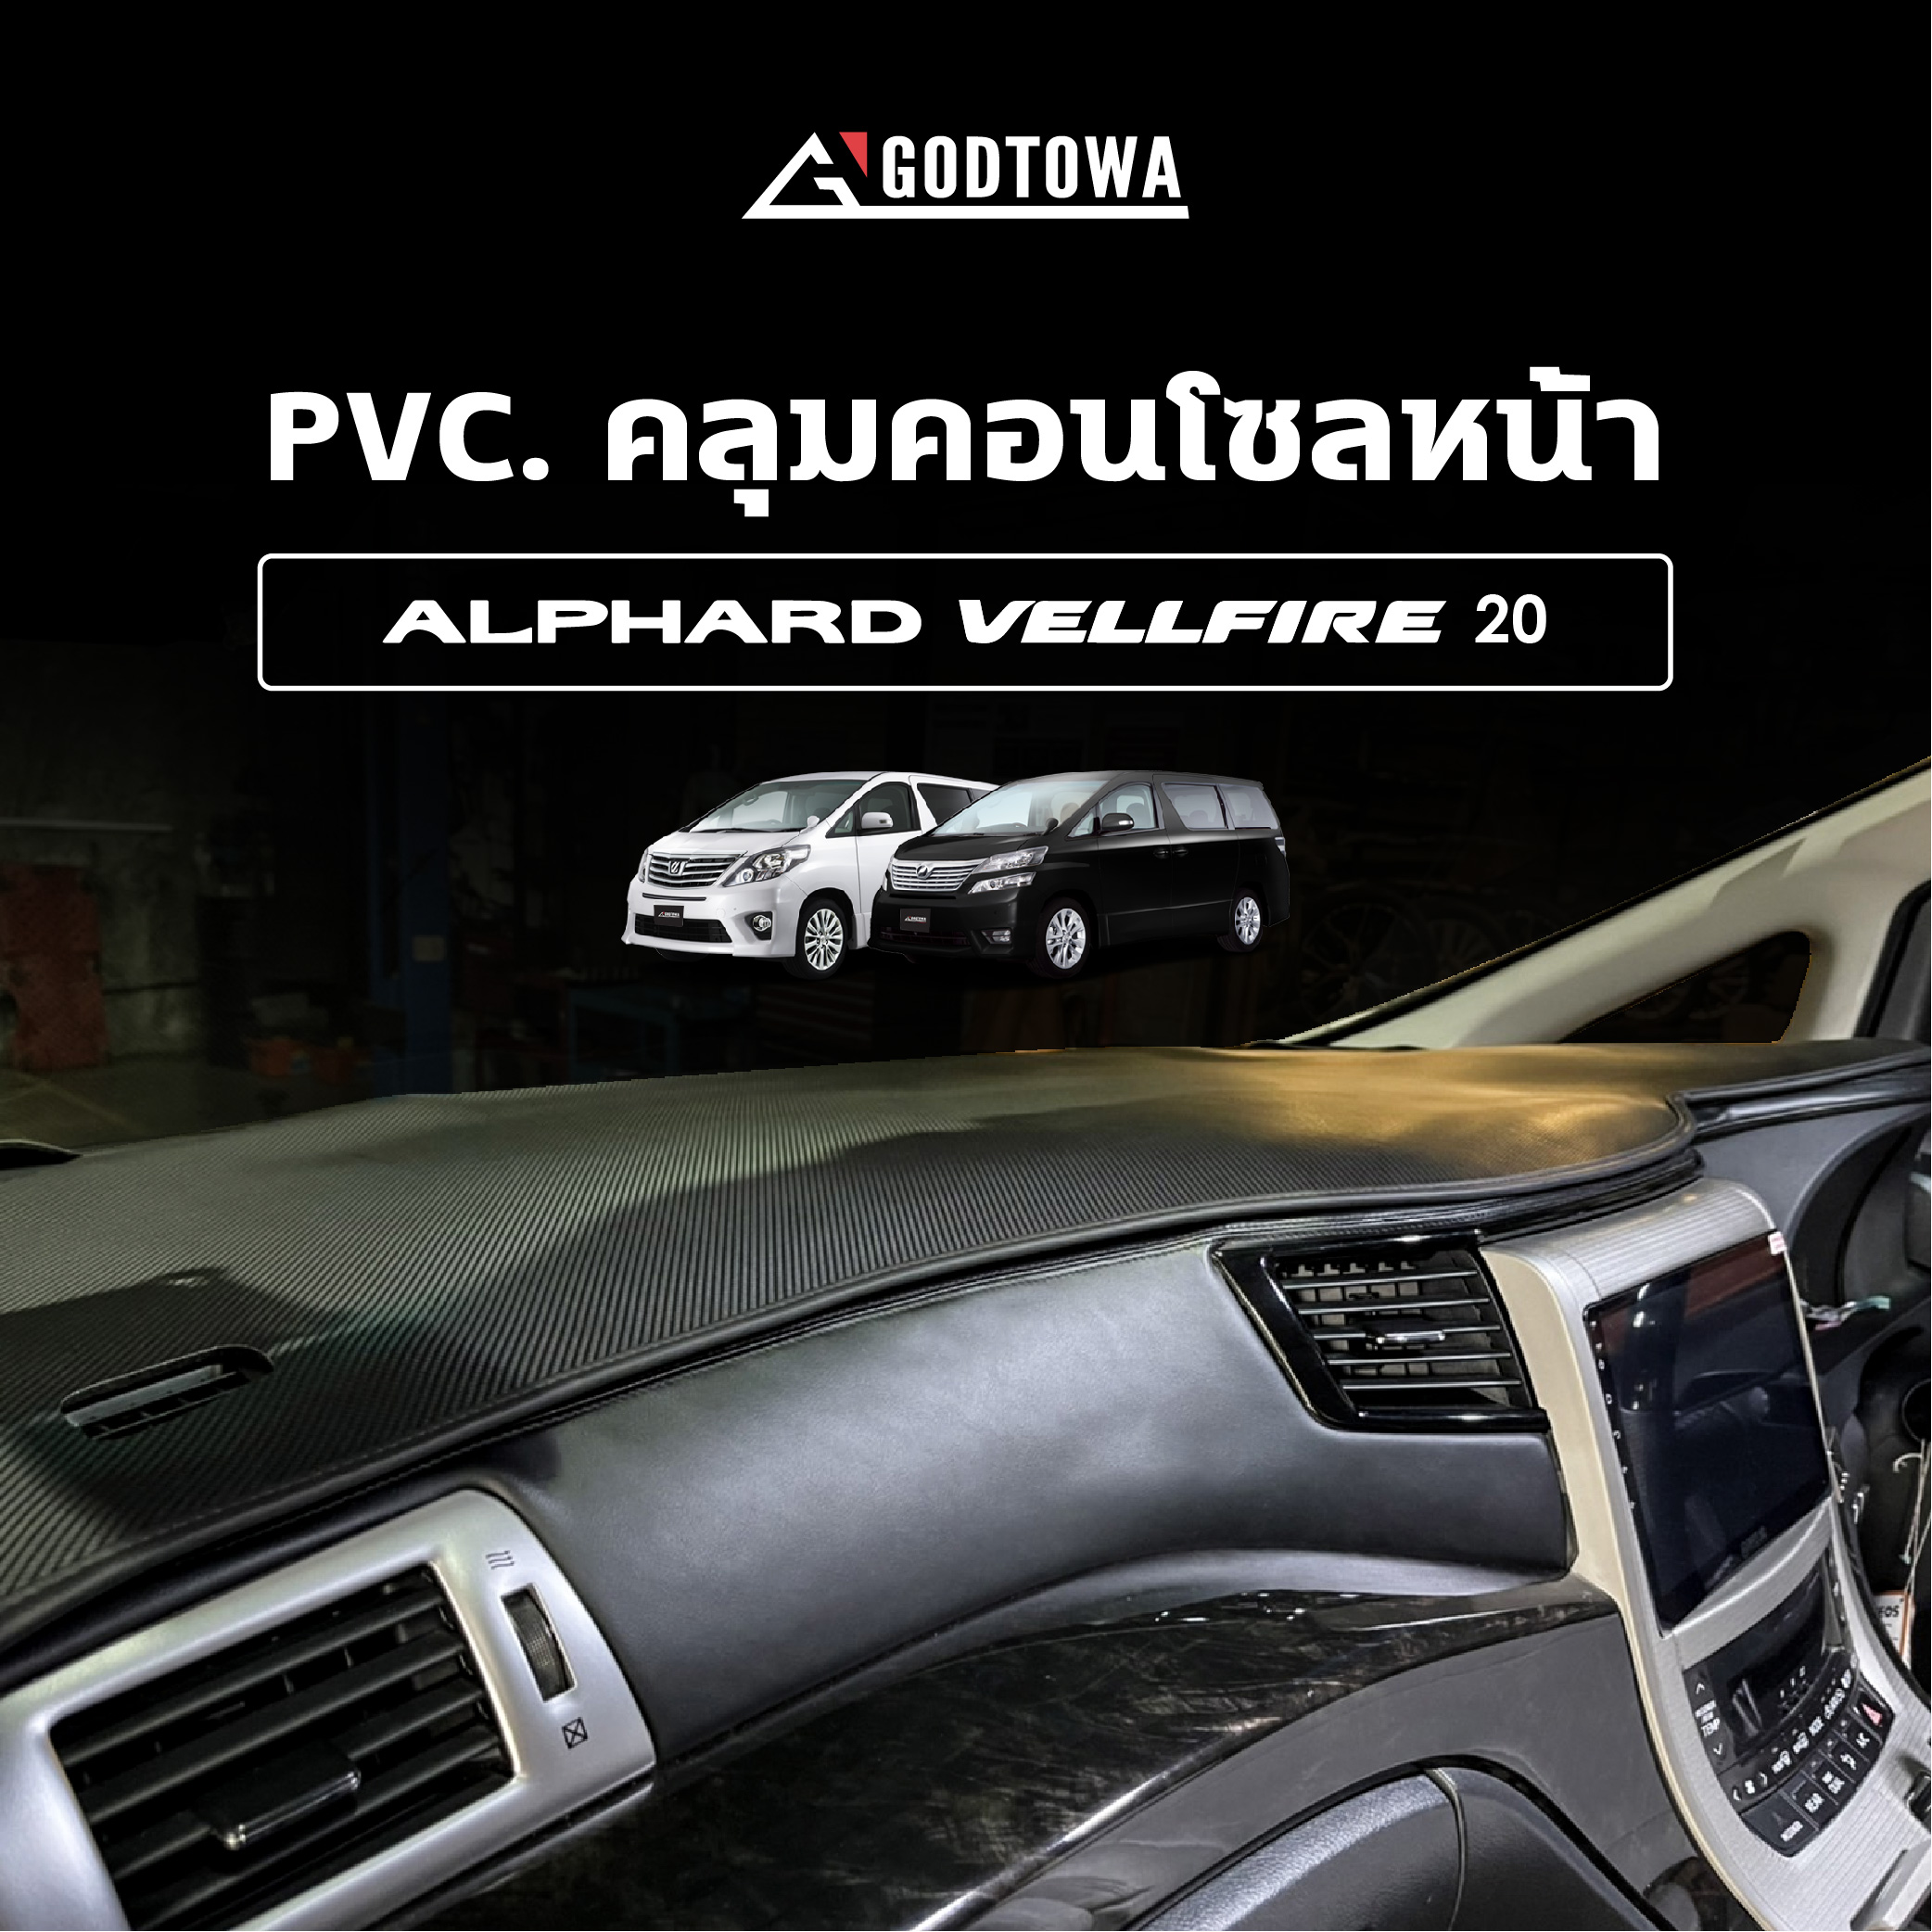 PVC. คลุมคอนโซลหน้า อัลพาร์ด เวลไฟร์ PVC.คลุมคอนโซลหน้าติดรถยนต์ ALPHARD/VELLFIRE 20